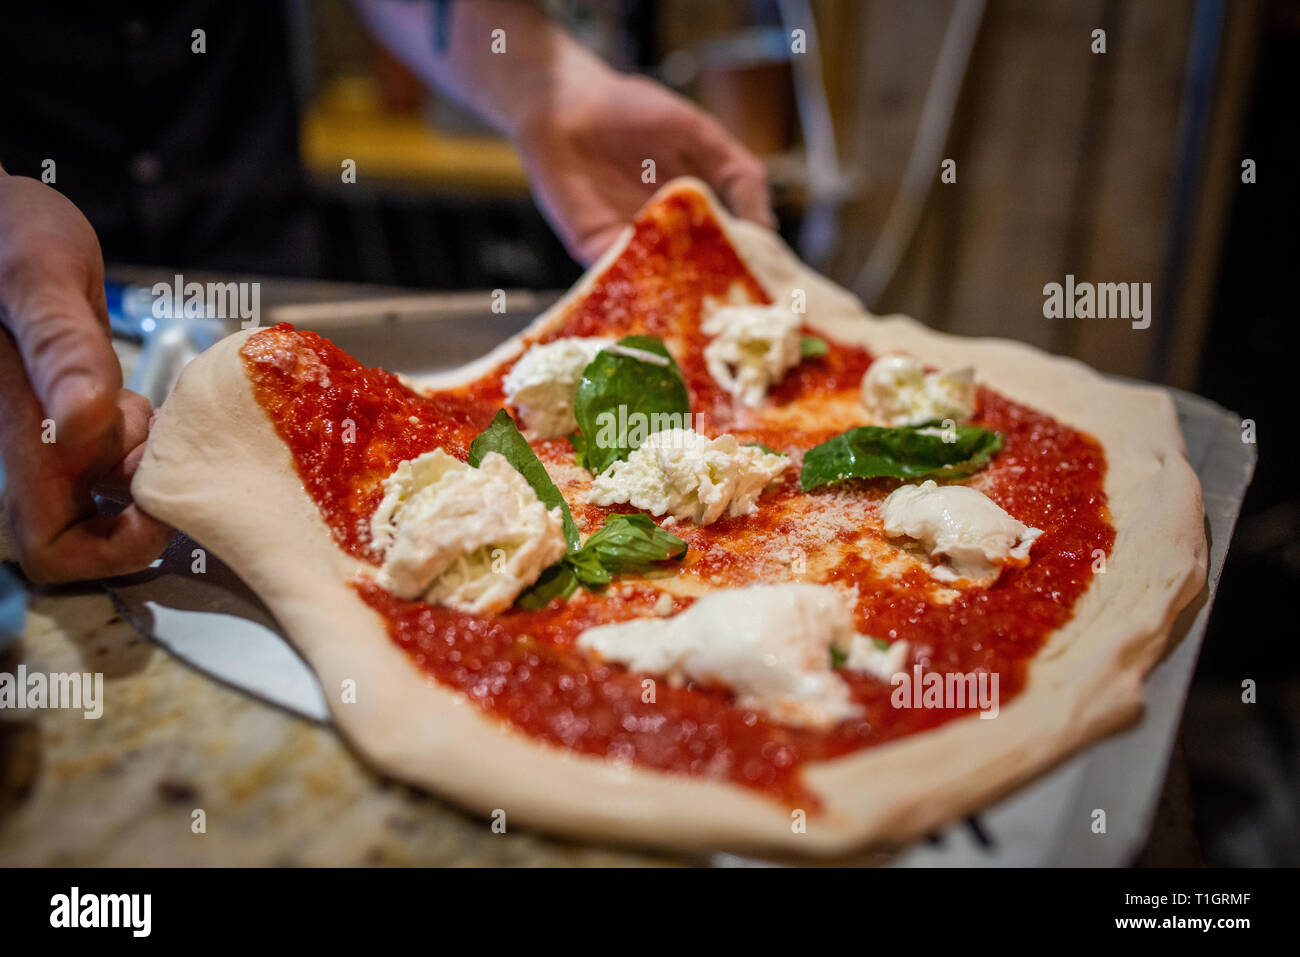 Close up of a chef's hands préparer une authentique pizza Margherita napolitain italien dans une pizzeria trattoria. Placer la pizza sur peel Banque D'Images